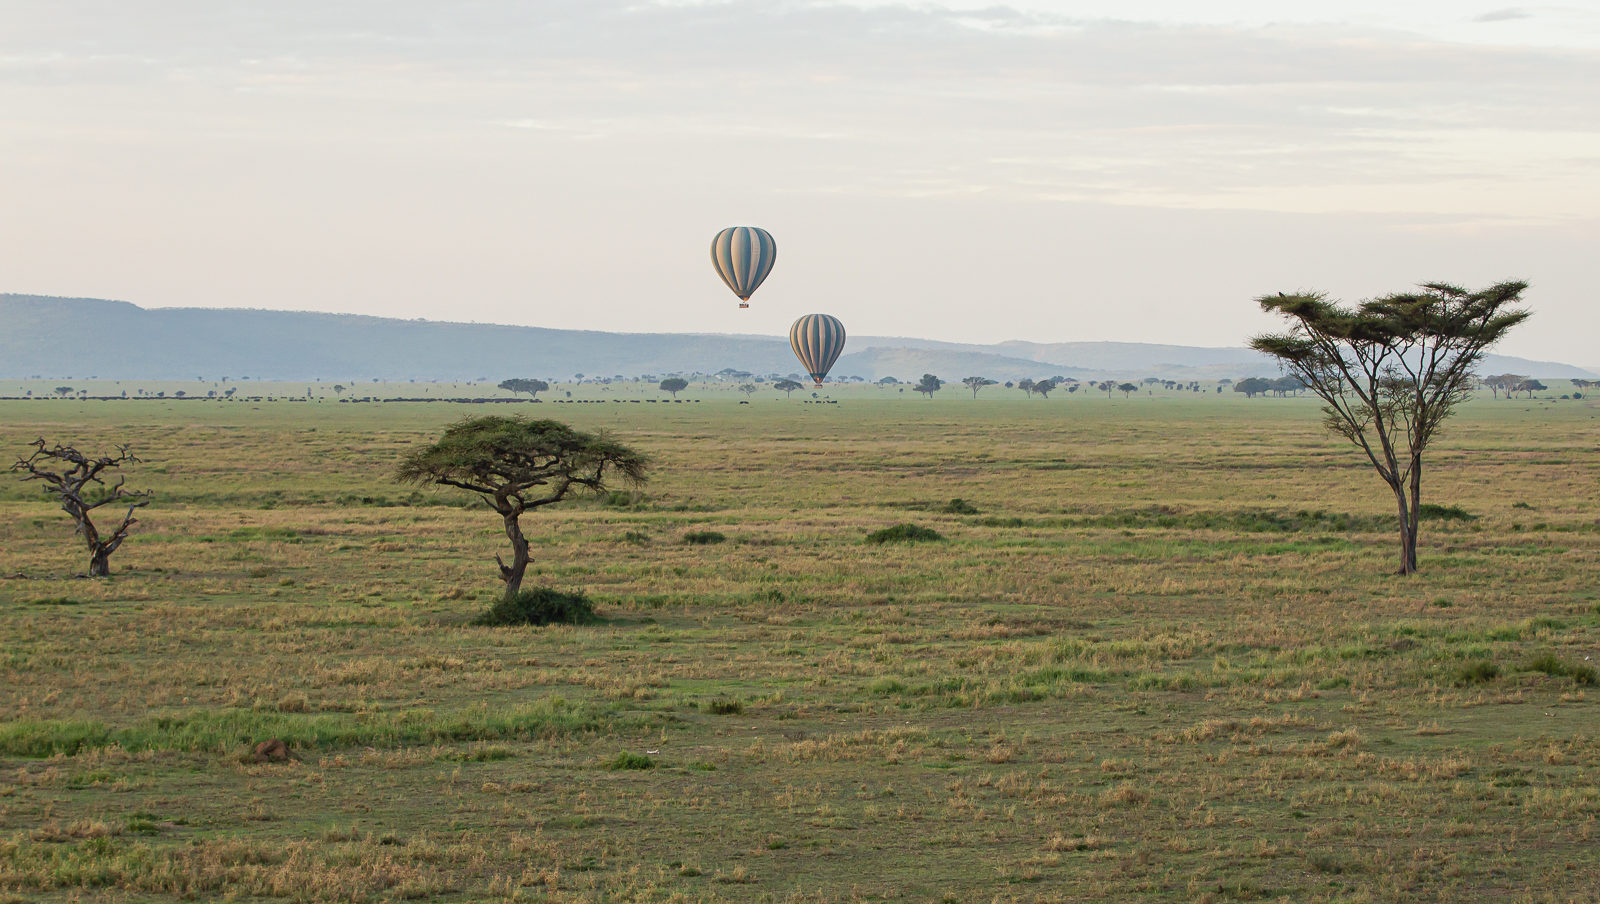 Balloon Ride Over The Serengeti